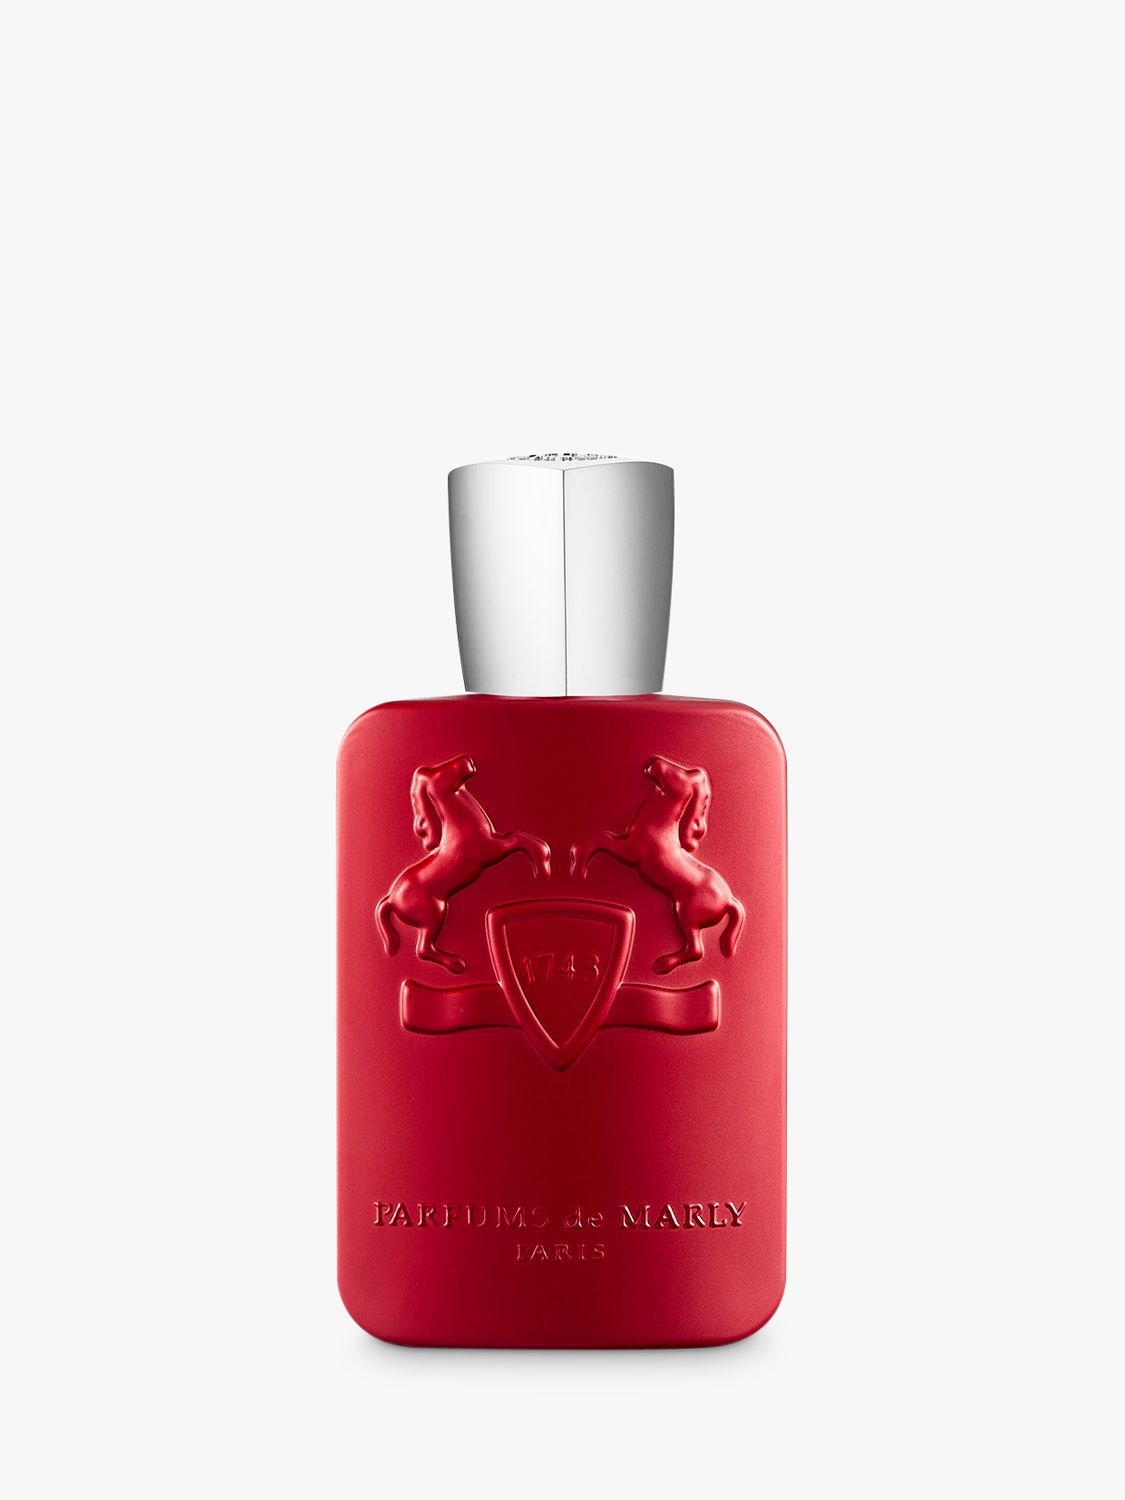 Parfums de Marly Kalan Eau de Parfum, 125ml